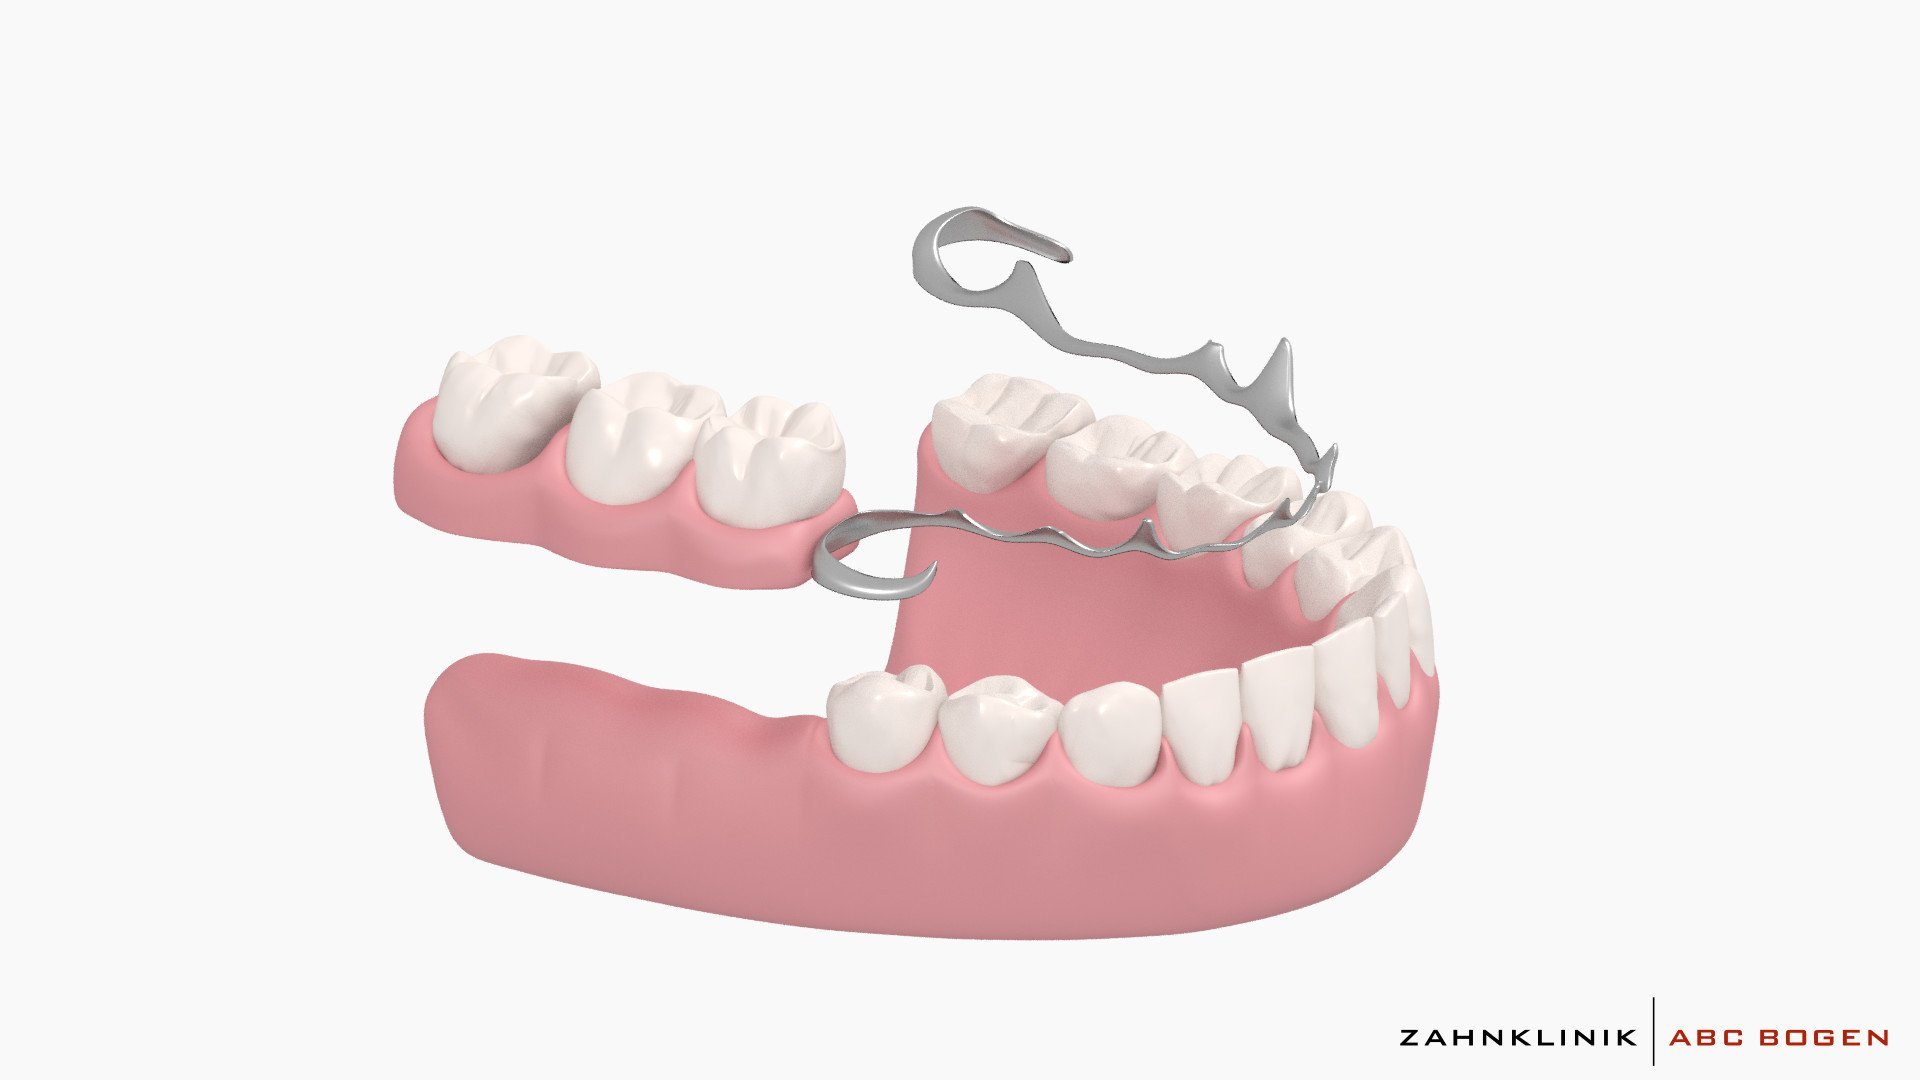 Протезирование зубов инвалидам 3 группы. Бюгельный протез (1 челюсть)+кламмер. Бюгельный протез кламмерный (remanium-700). Бюгельный протез замковый (2 замка Bredent). Бюгельный мостовидный протез.